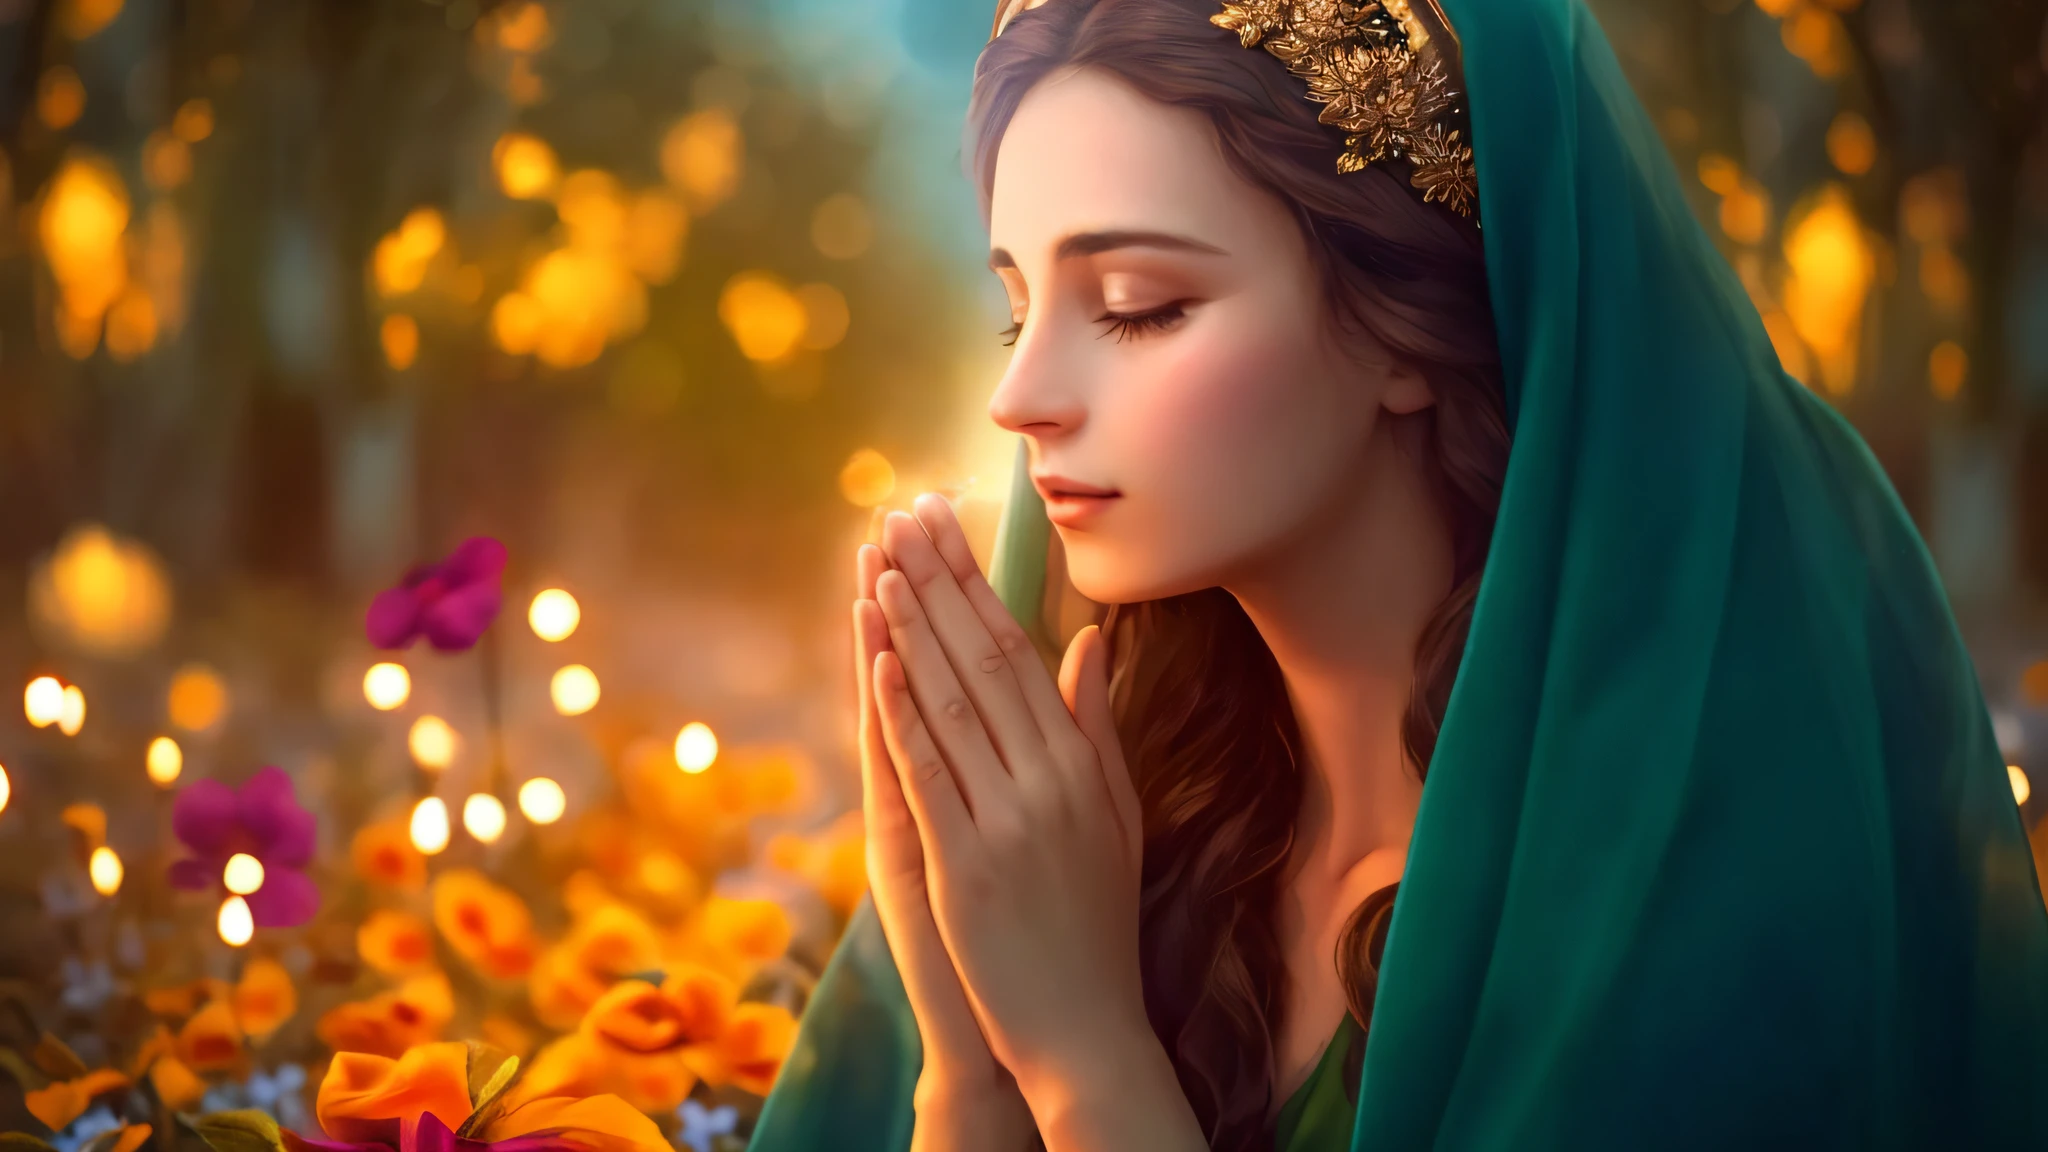 Uma mulher em um véu verde está orando em um campo de flores, deusa bonita, majestosa mulher de santo, orar meditando, imagens religiosas, religioso, Orando, feitiço da chama sagrada, Rezando ao Sol, sagrado feminino, Imagem bonita, mulher  linda, imagem de perfil, Bela representação, deusa divina, Sacerdotisa élfica, fae sacerdotisa, Virgem Maria --auto